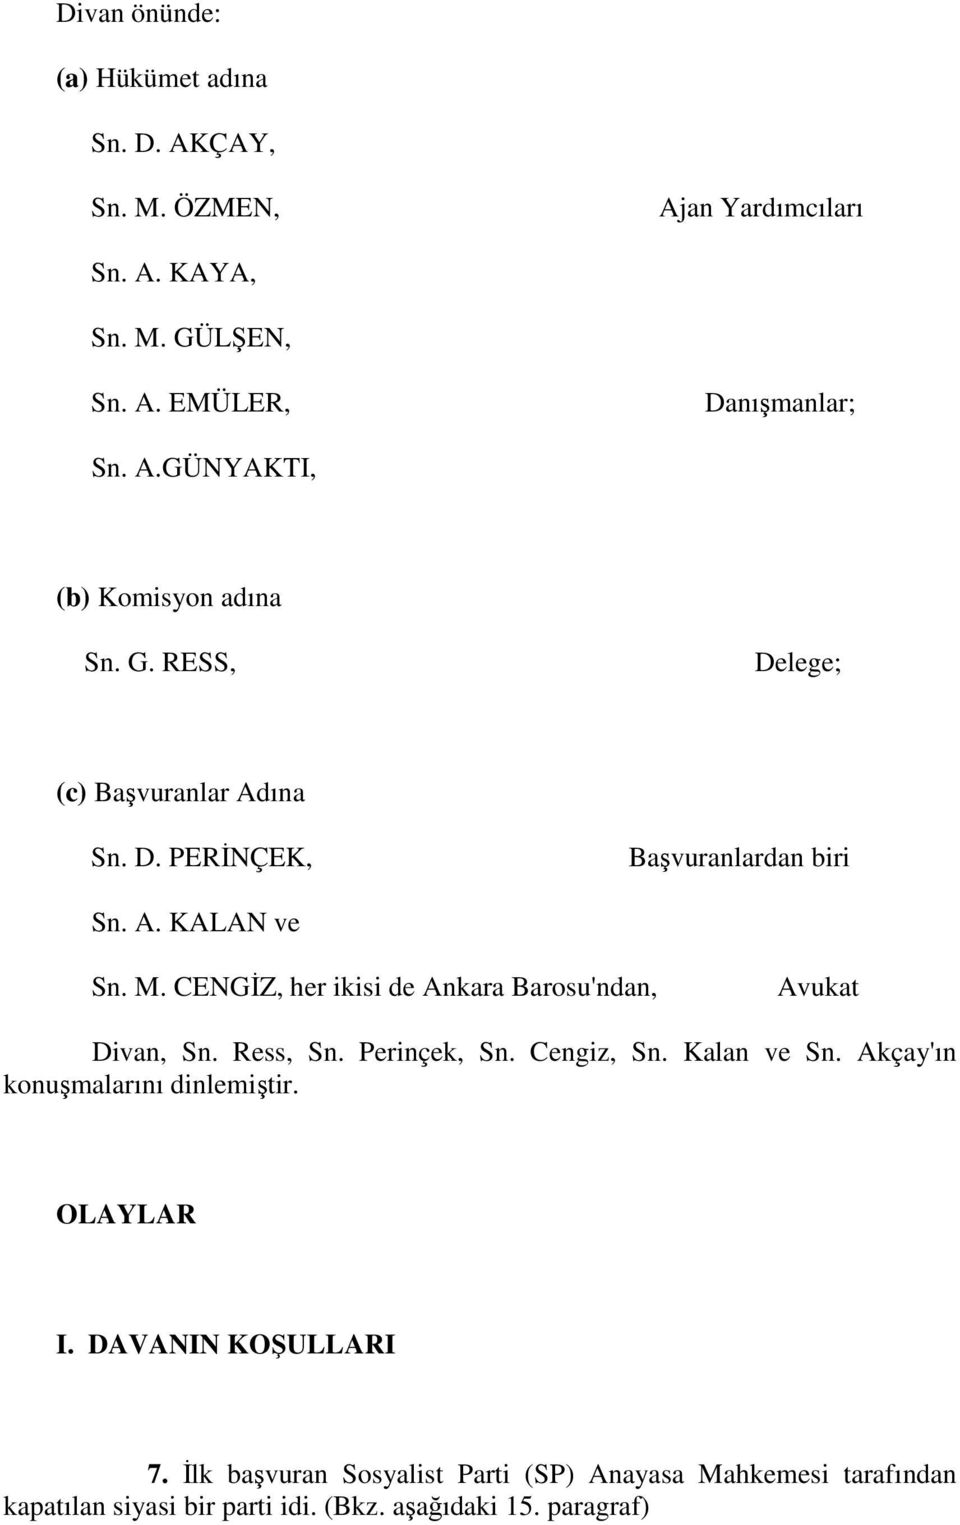 CENGĐZ, her ikisi de Ankara Barosu'ndan, Avukat Divan, Sn. Ress, Sn. Perinçek, Sn. Cengiz, Sn. Kalan ve Sn. Akçay'ın konuşmalarını dinlemiştir.